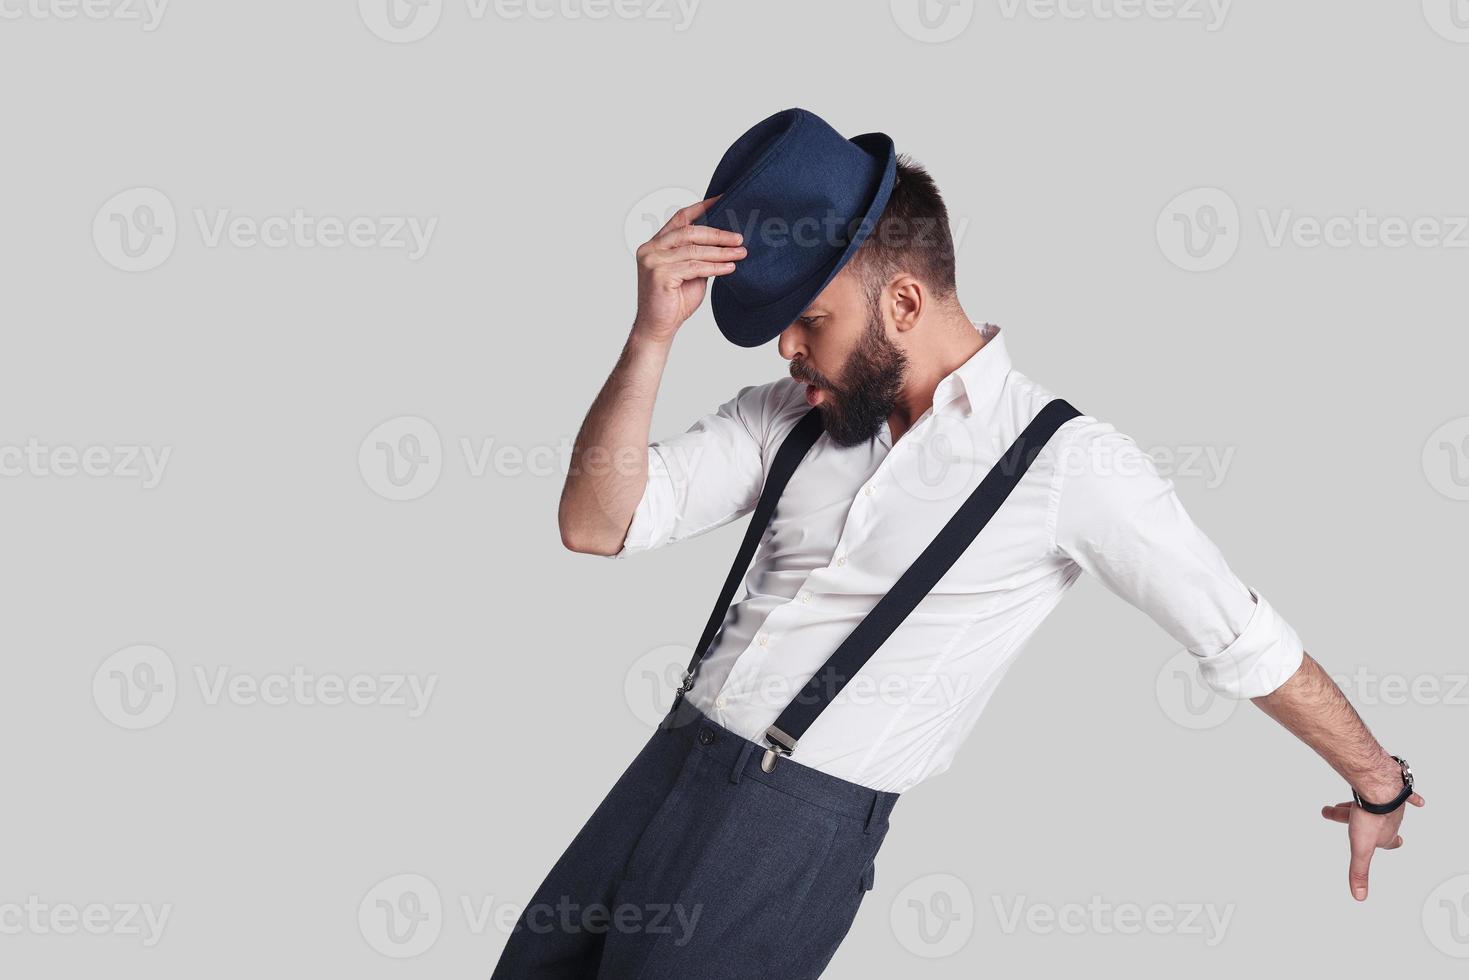 il a obtenu les mouvements. beau jeune homme en bretelles ajustant son chapeau et faisant une grimace en dansant sur fond gris photo